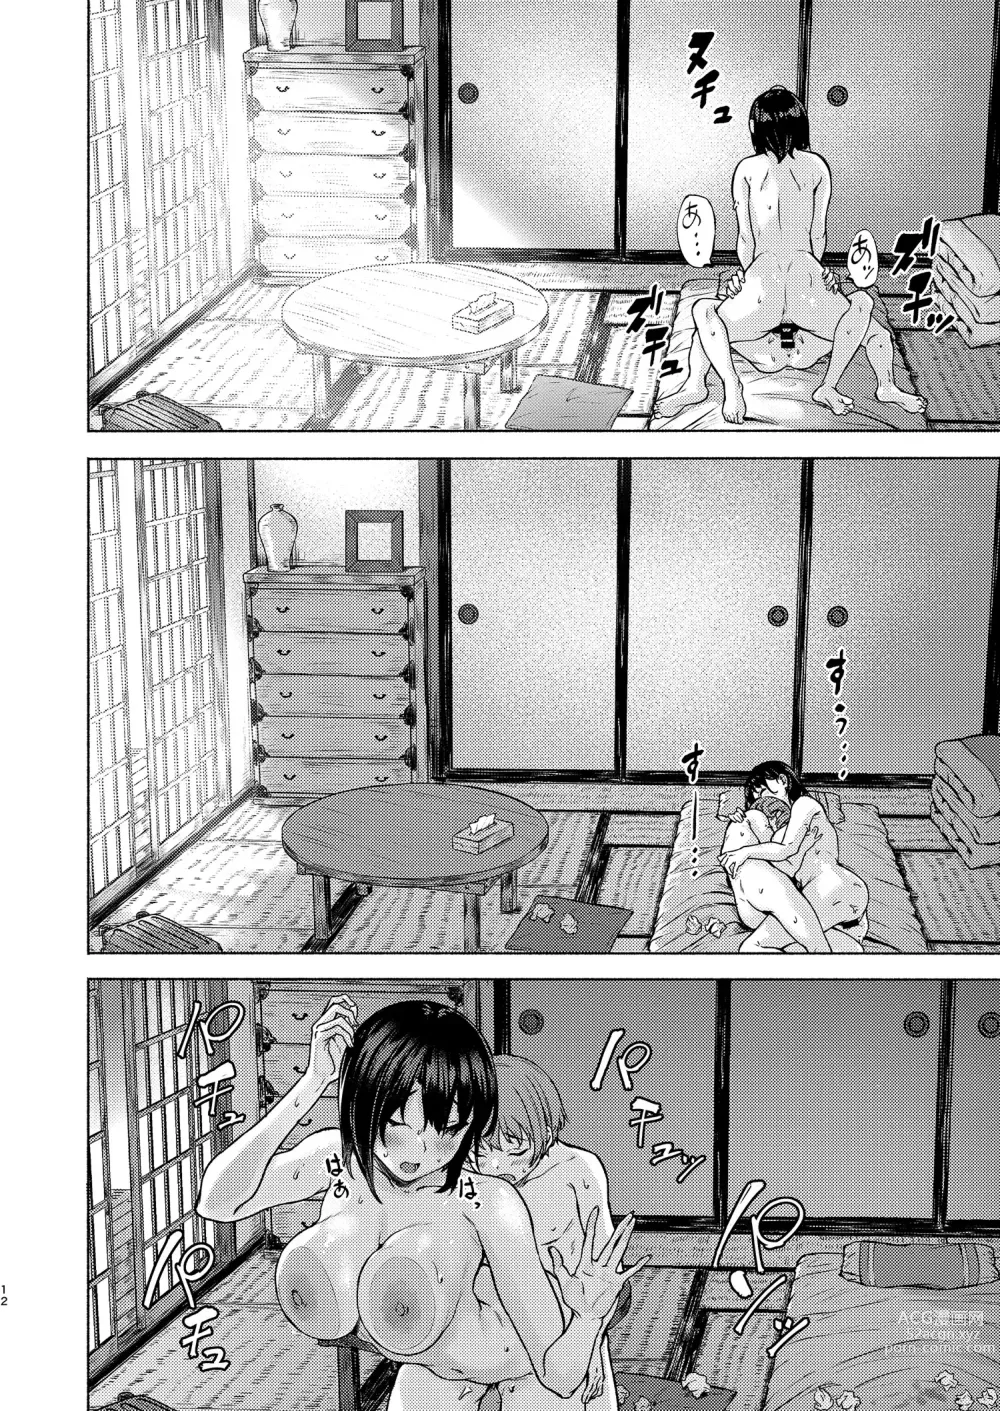 Page 12 of doujinshi Motto Okkina Saori-chan wa Bukiyou ni Eroi